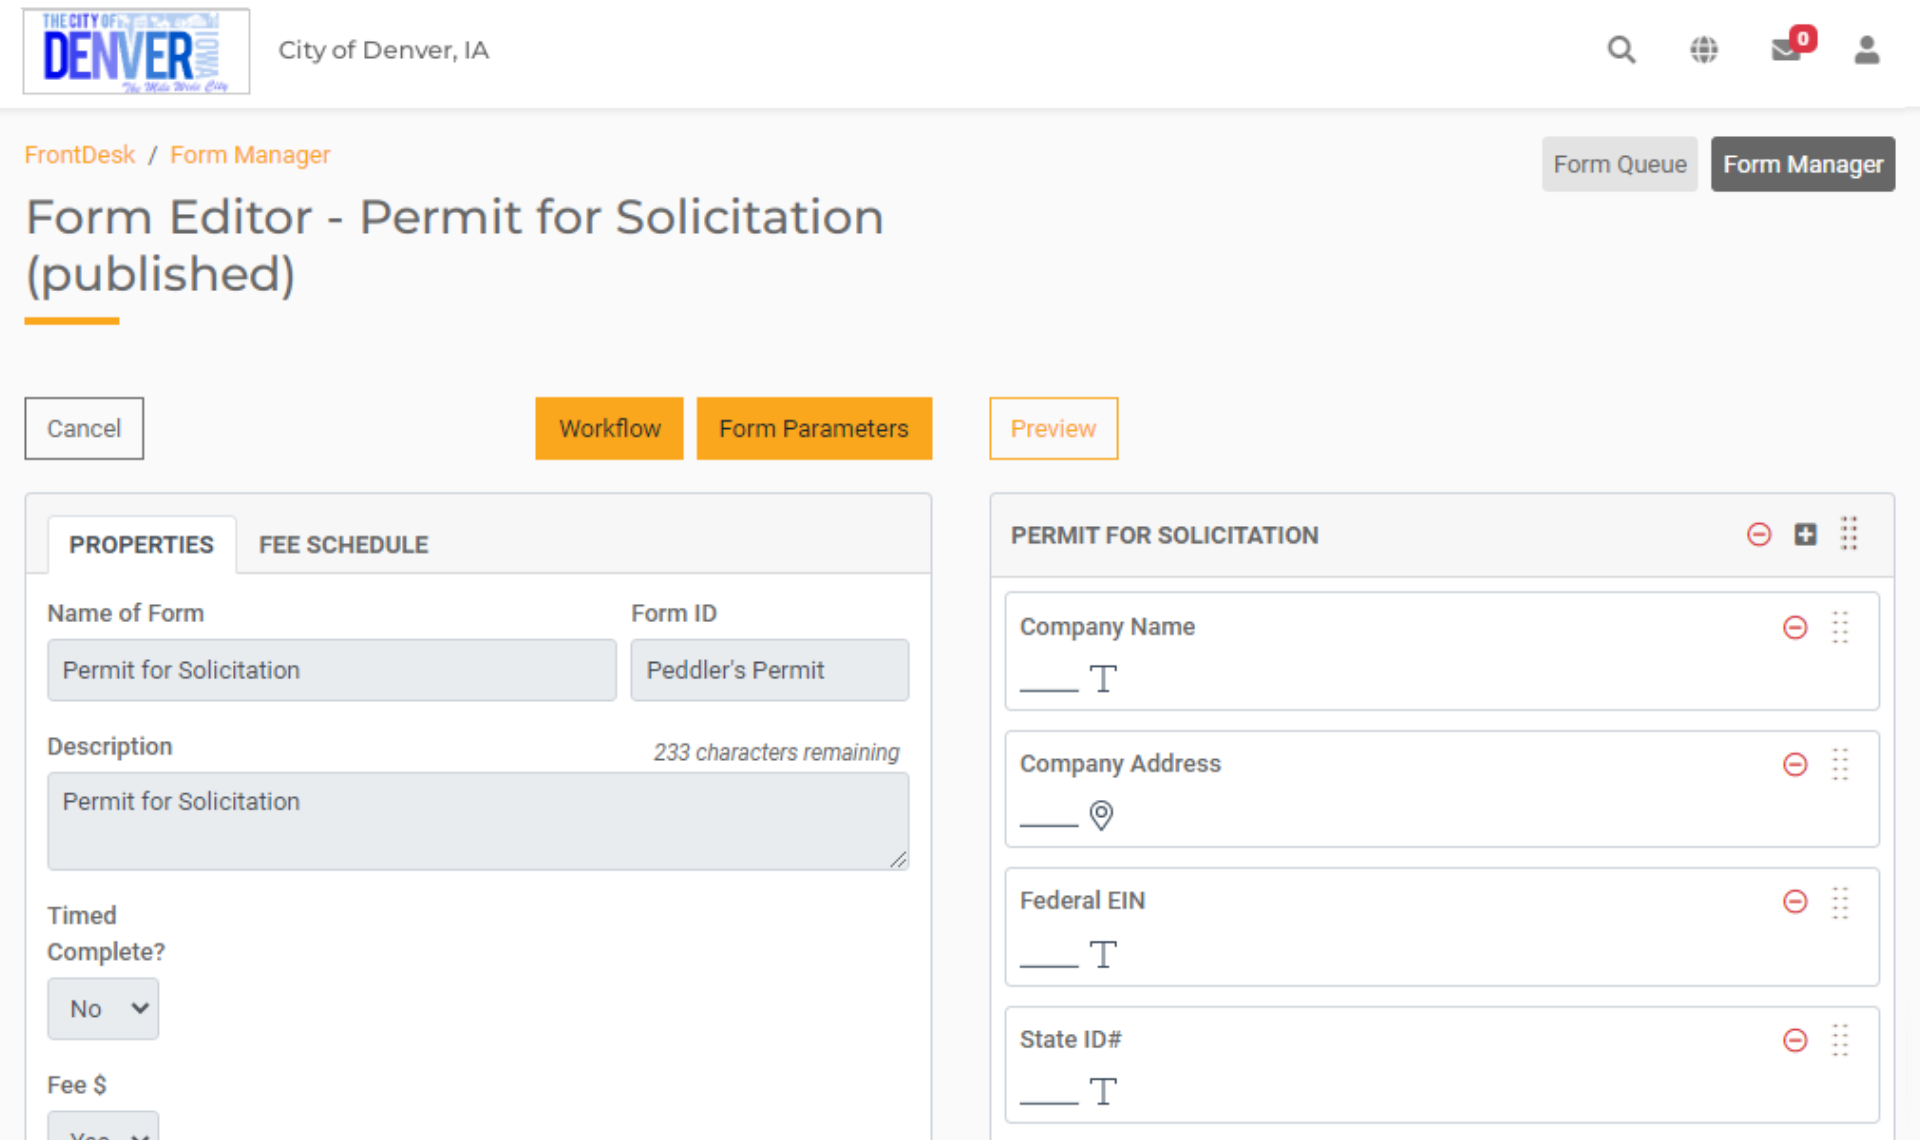 FrontDesk Form Denver IA - Permit for Solicitation